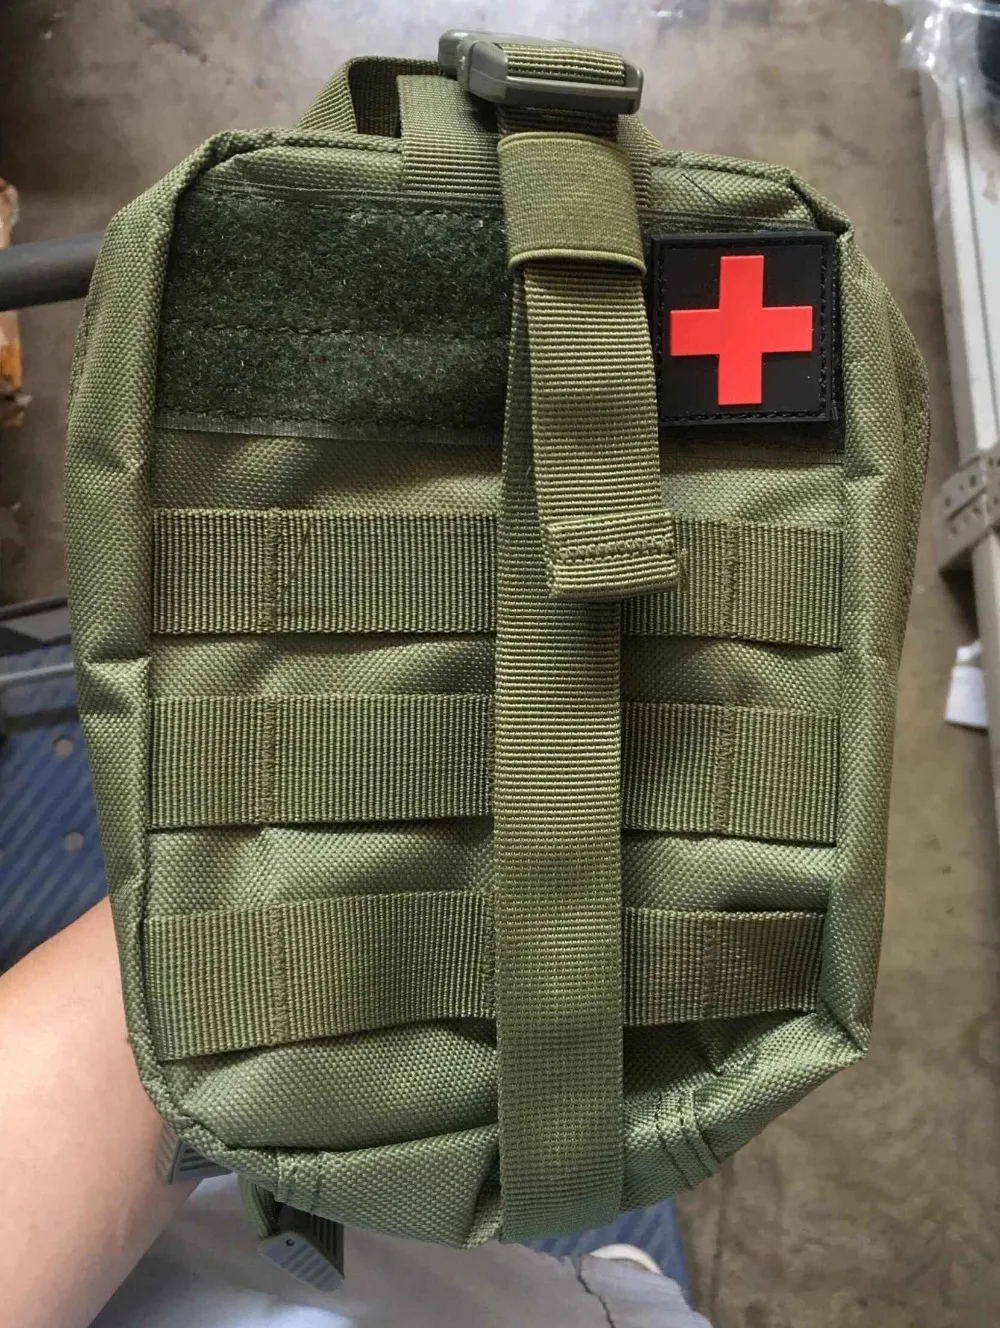 Новая походная сумка, походный набор первой помощи, тактическая медицинская сумка, рюкзак для выживания, наборы для путешествий